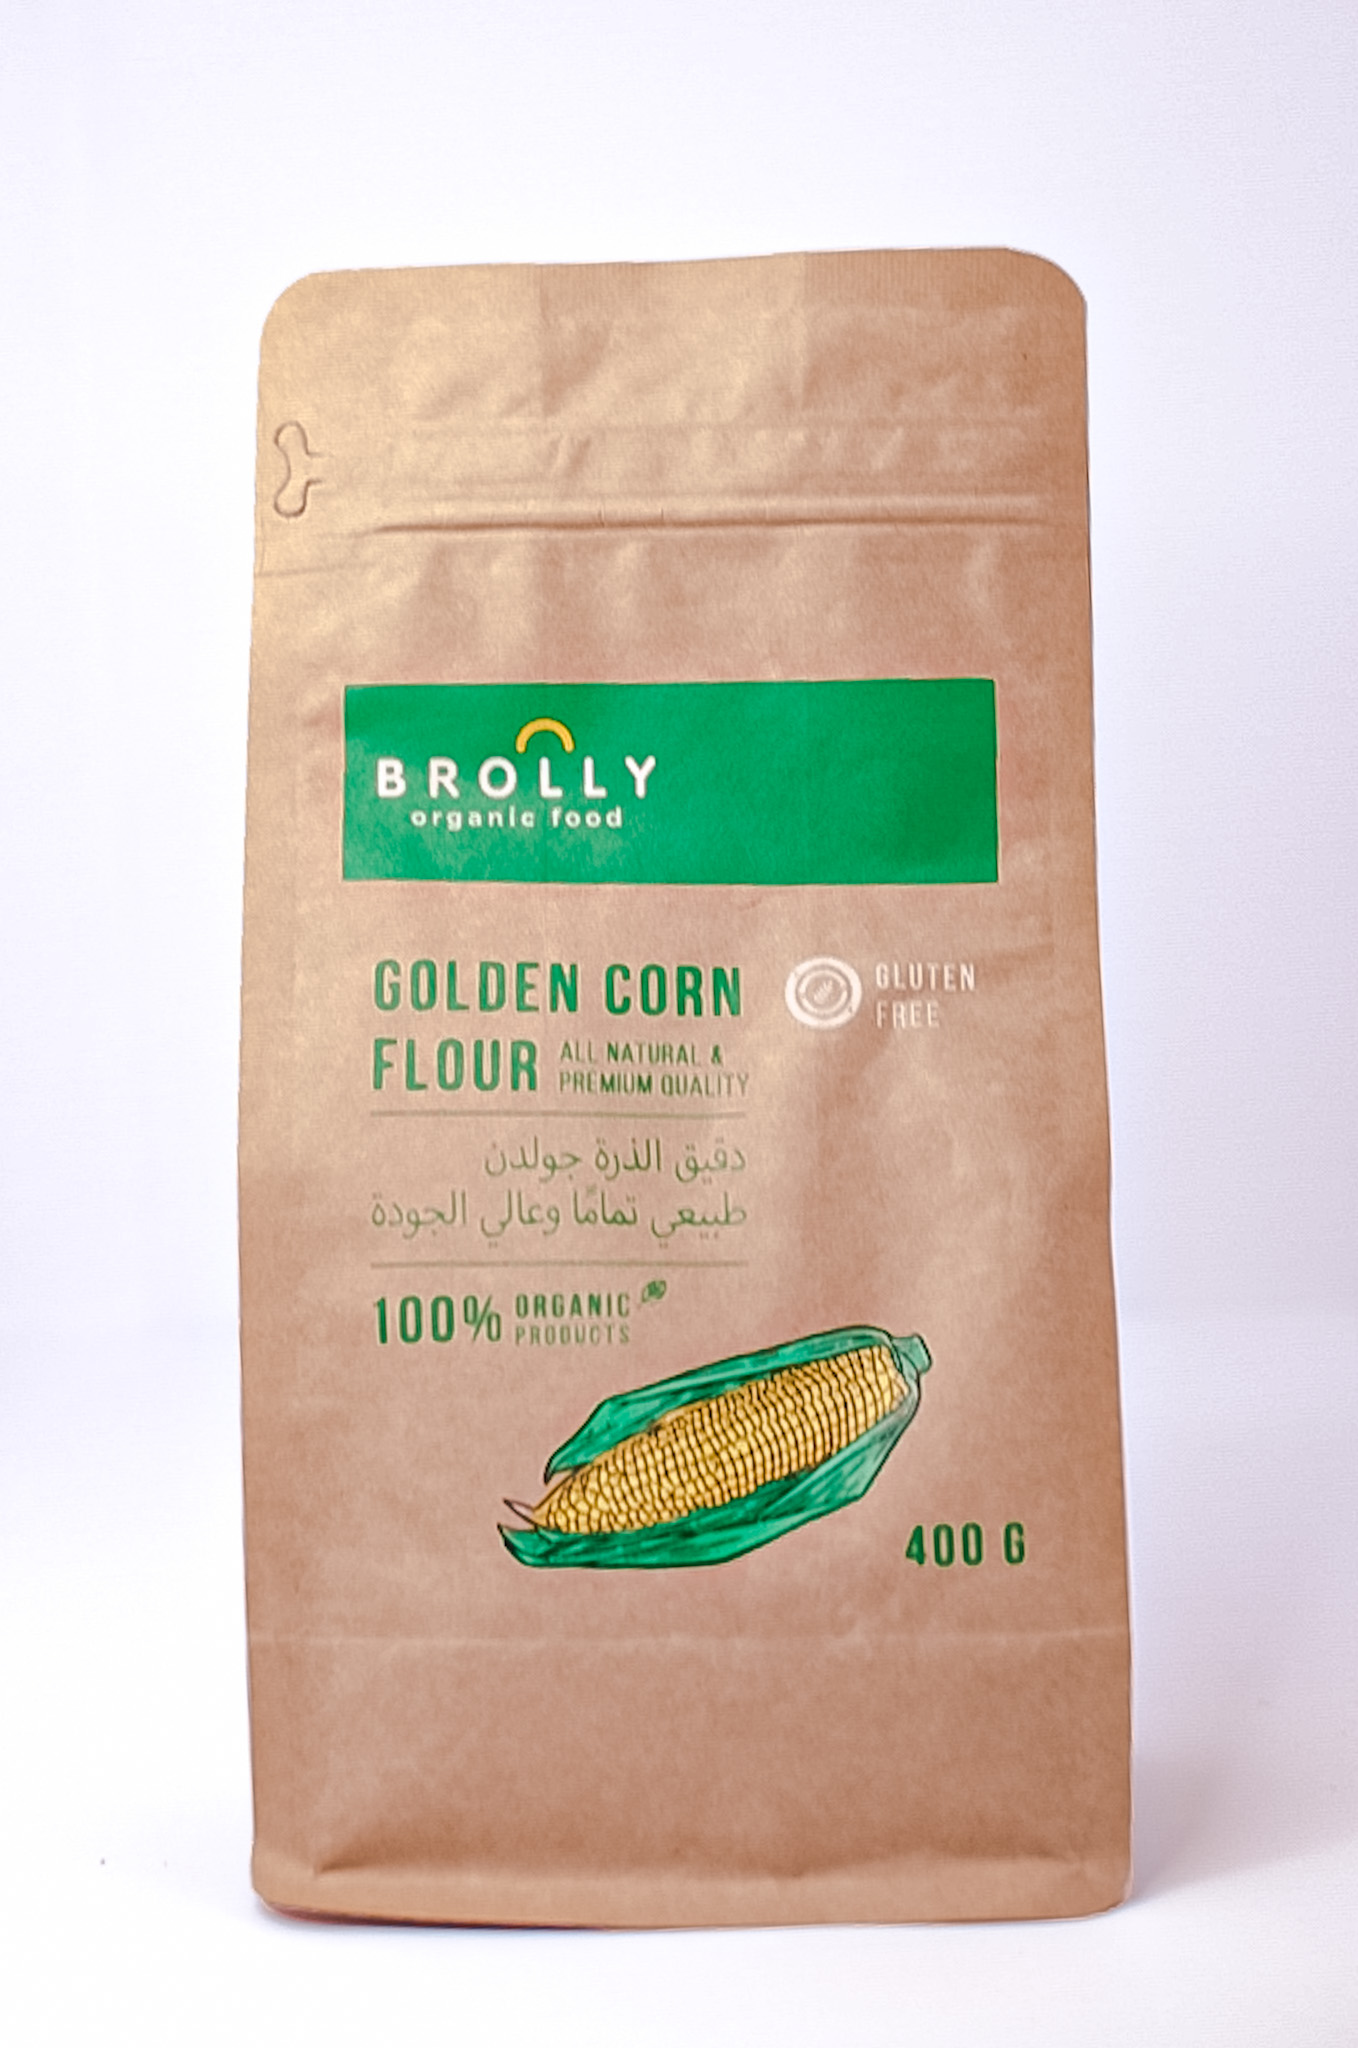 Corn flour - organic